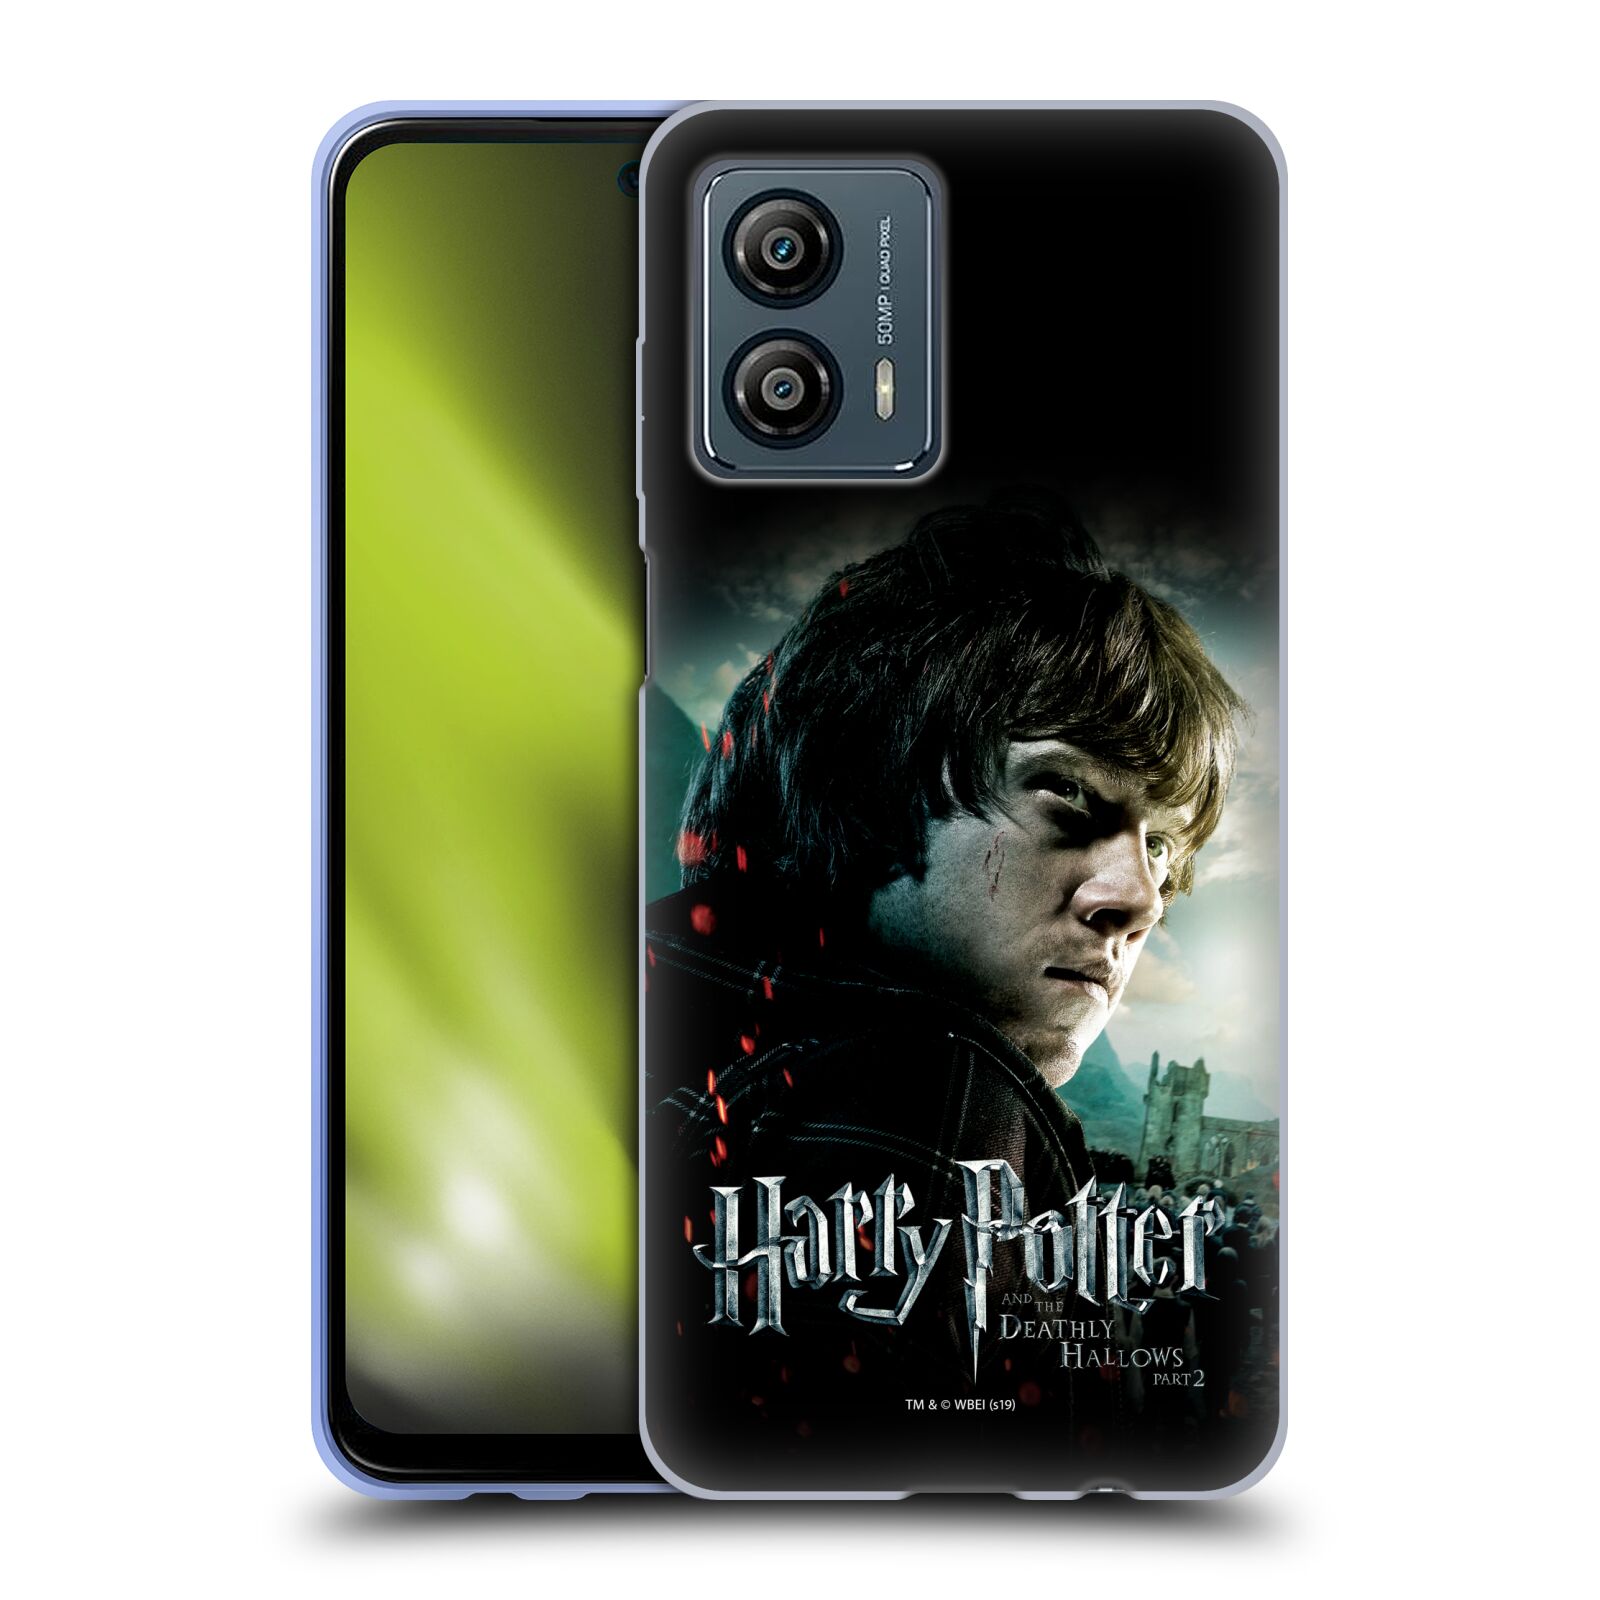 Silikonové pouzdro na mobil Motorola Moto G53 5G - Harry Potter a Relikvie smrti - Ron Weasley (Silikonový kryt, obal, pouzdro na mobilní telefon Motorola Moto G53 5G s licencovaným motivem Harry Potter a Relikvie smrti - Ron Weasley)